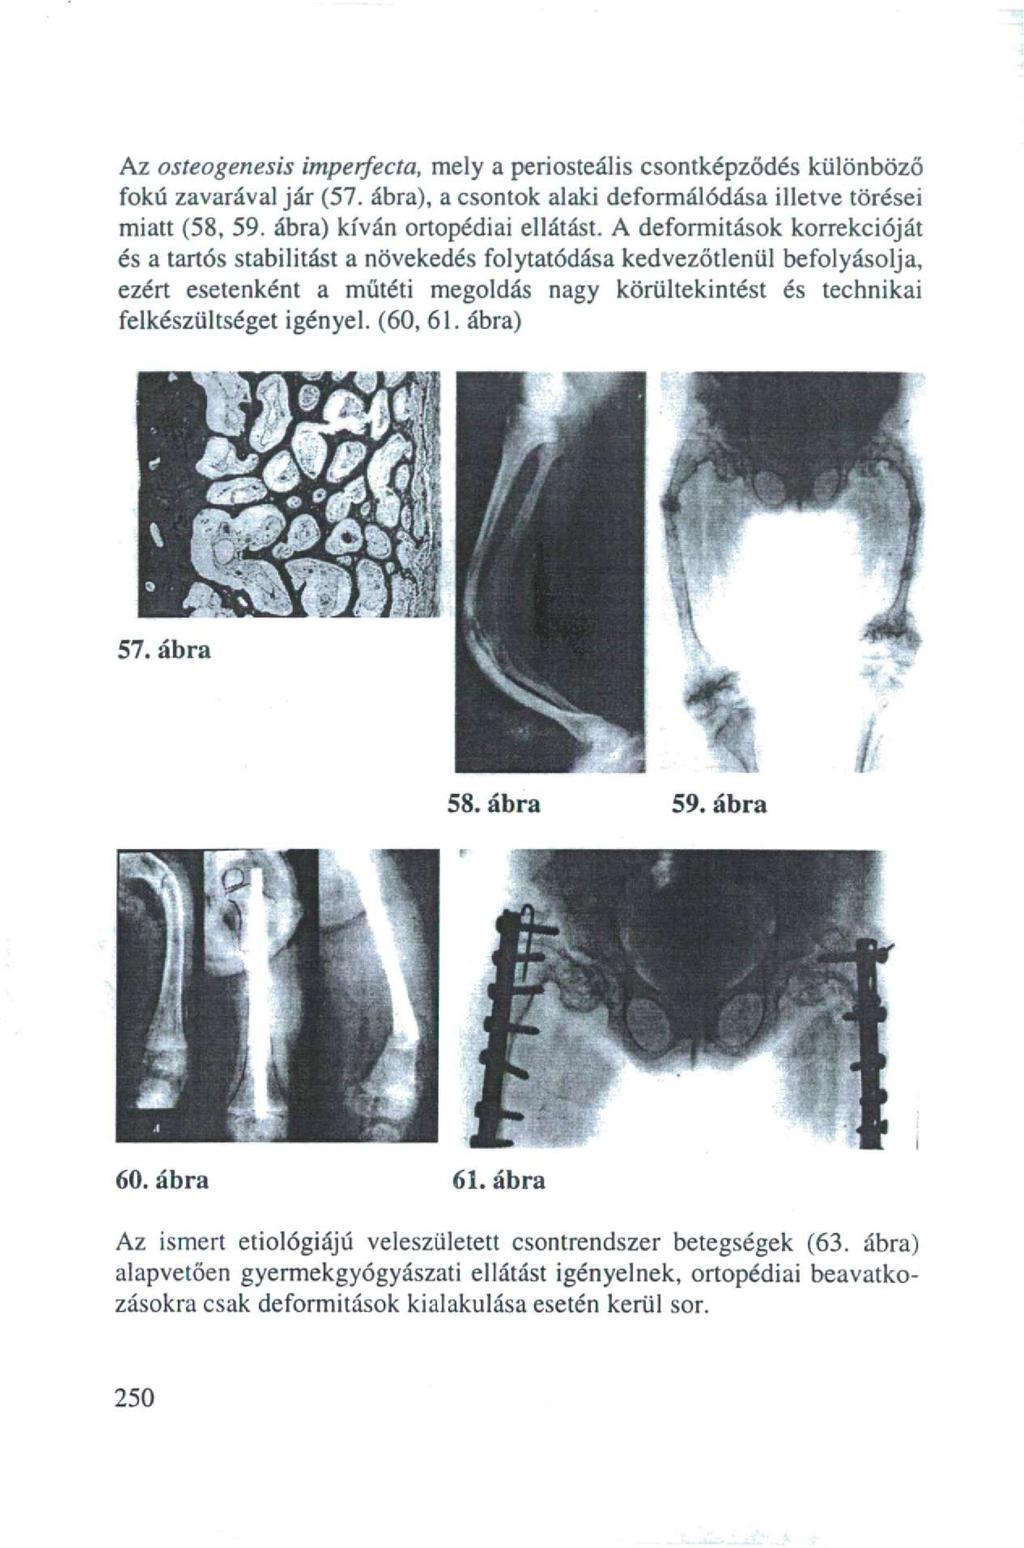 Az osteogenesis imperfecta, mely a periosteális csontképződés különböző fokú zavarával jár (57. ábra), a csontok alaki deformálódása illetve törései miatt (58, 59. ábra) kíván ortopédiai ellátást.